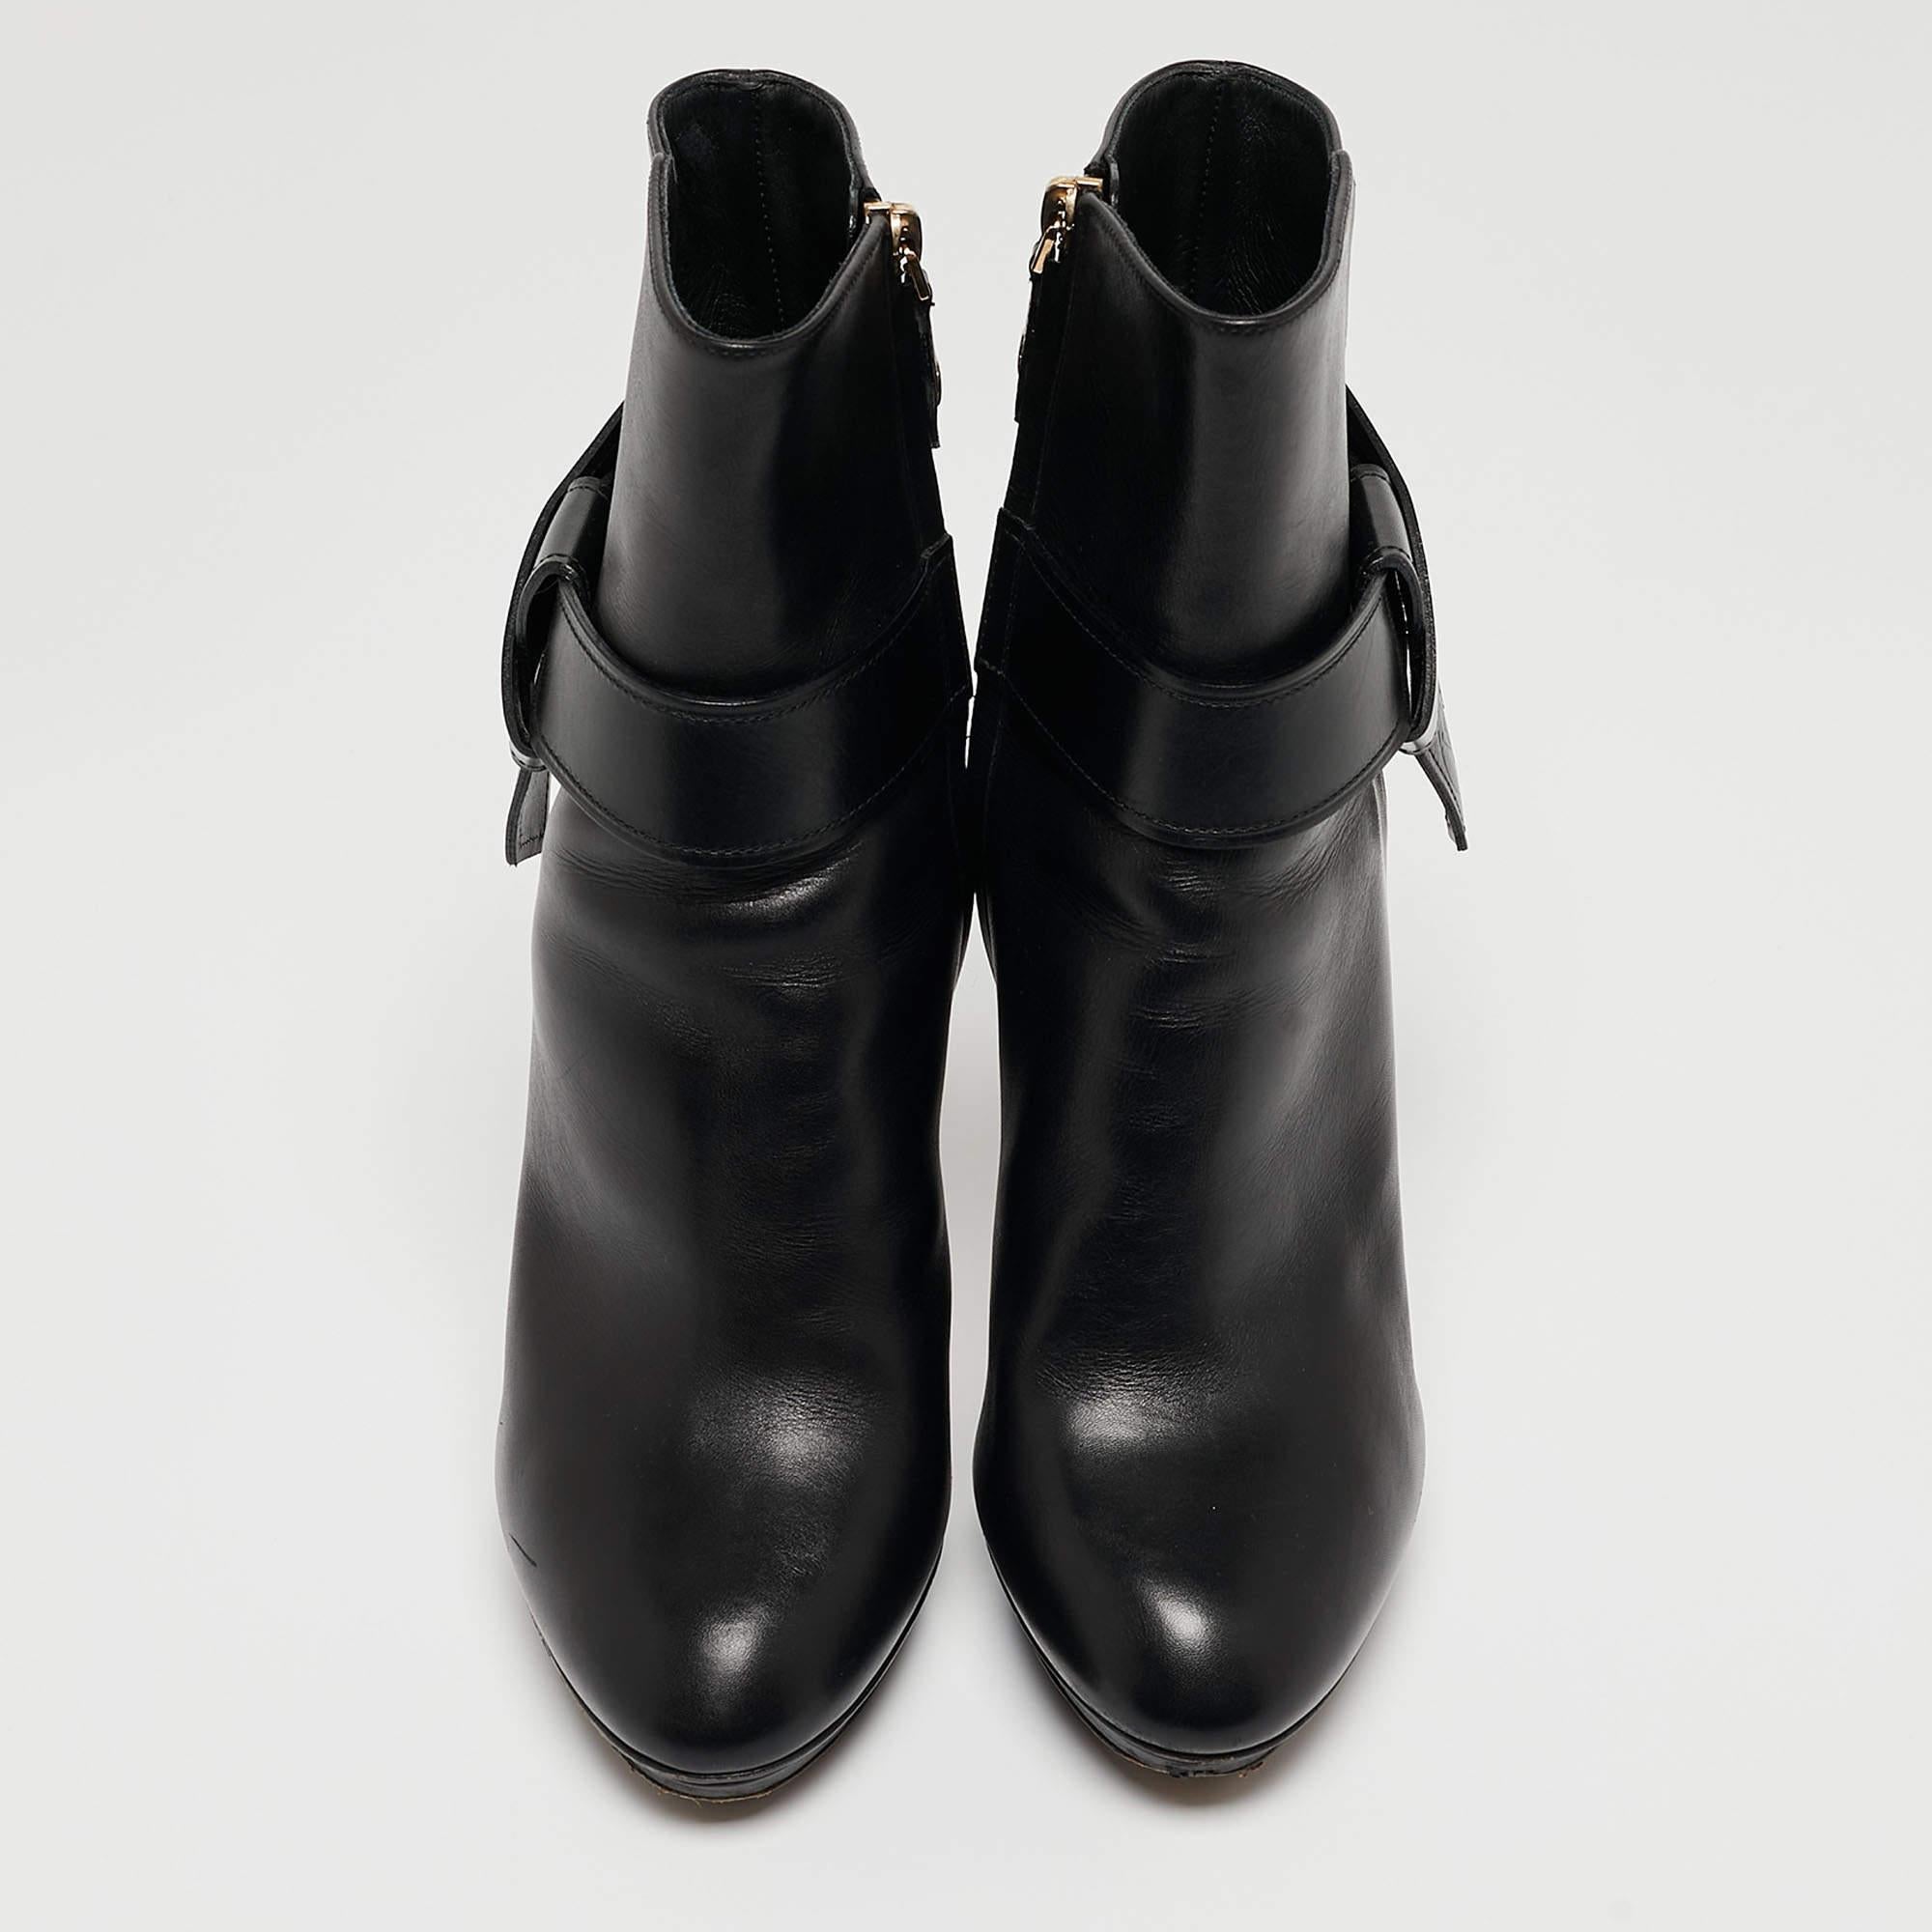 Women's Louis Vuitton Black Leather Platform Ankle Booties Size 37